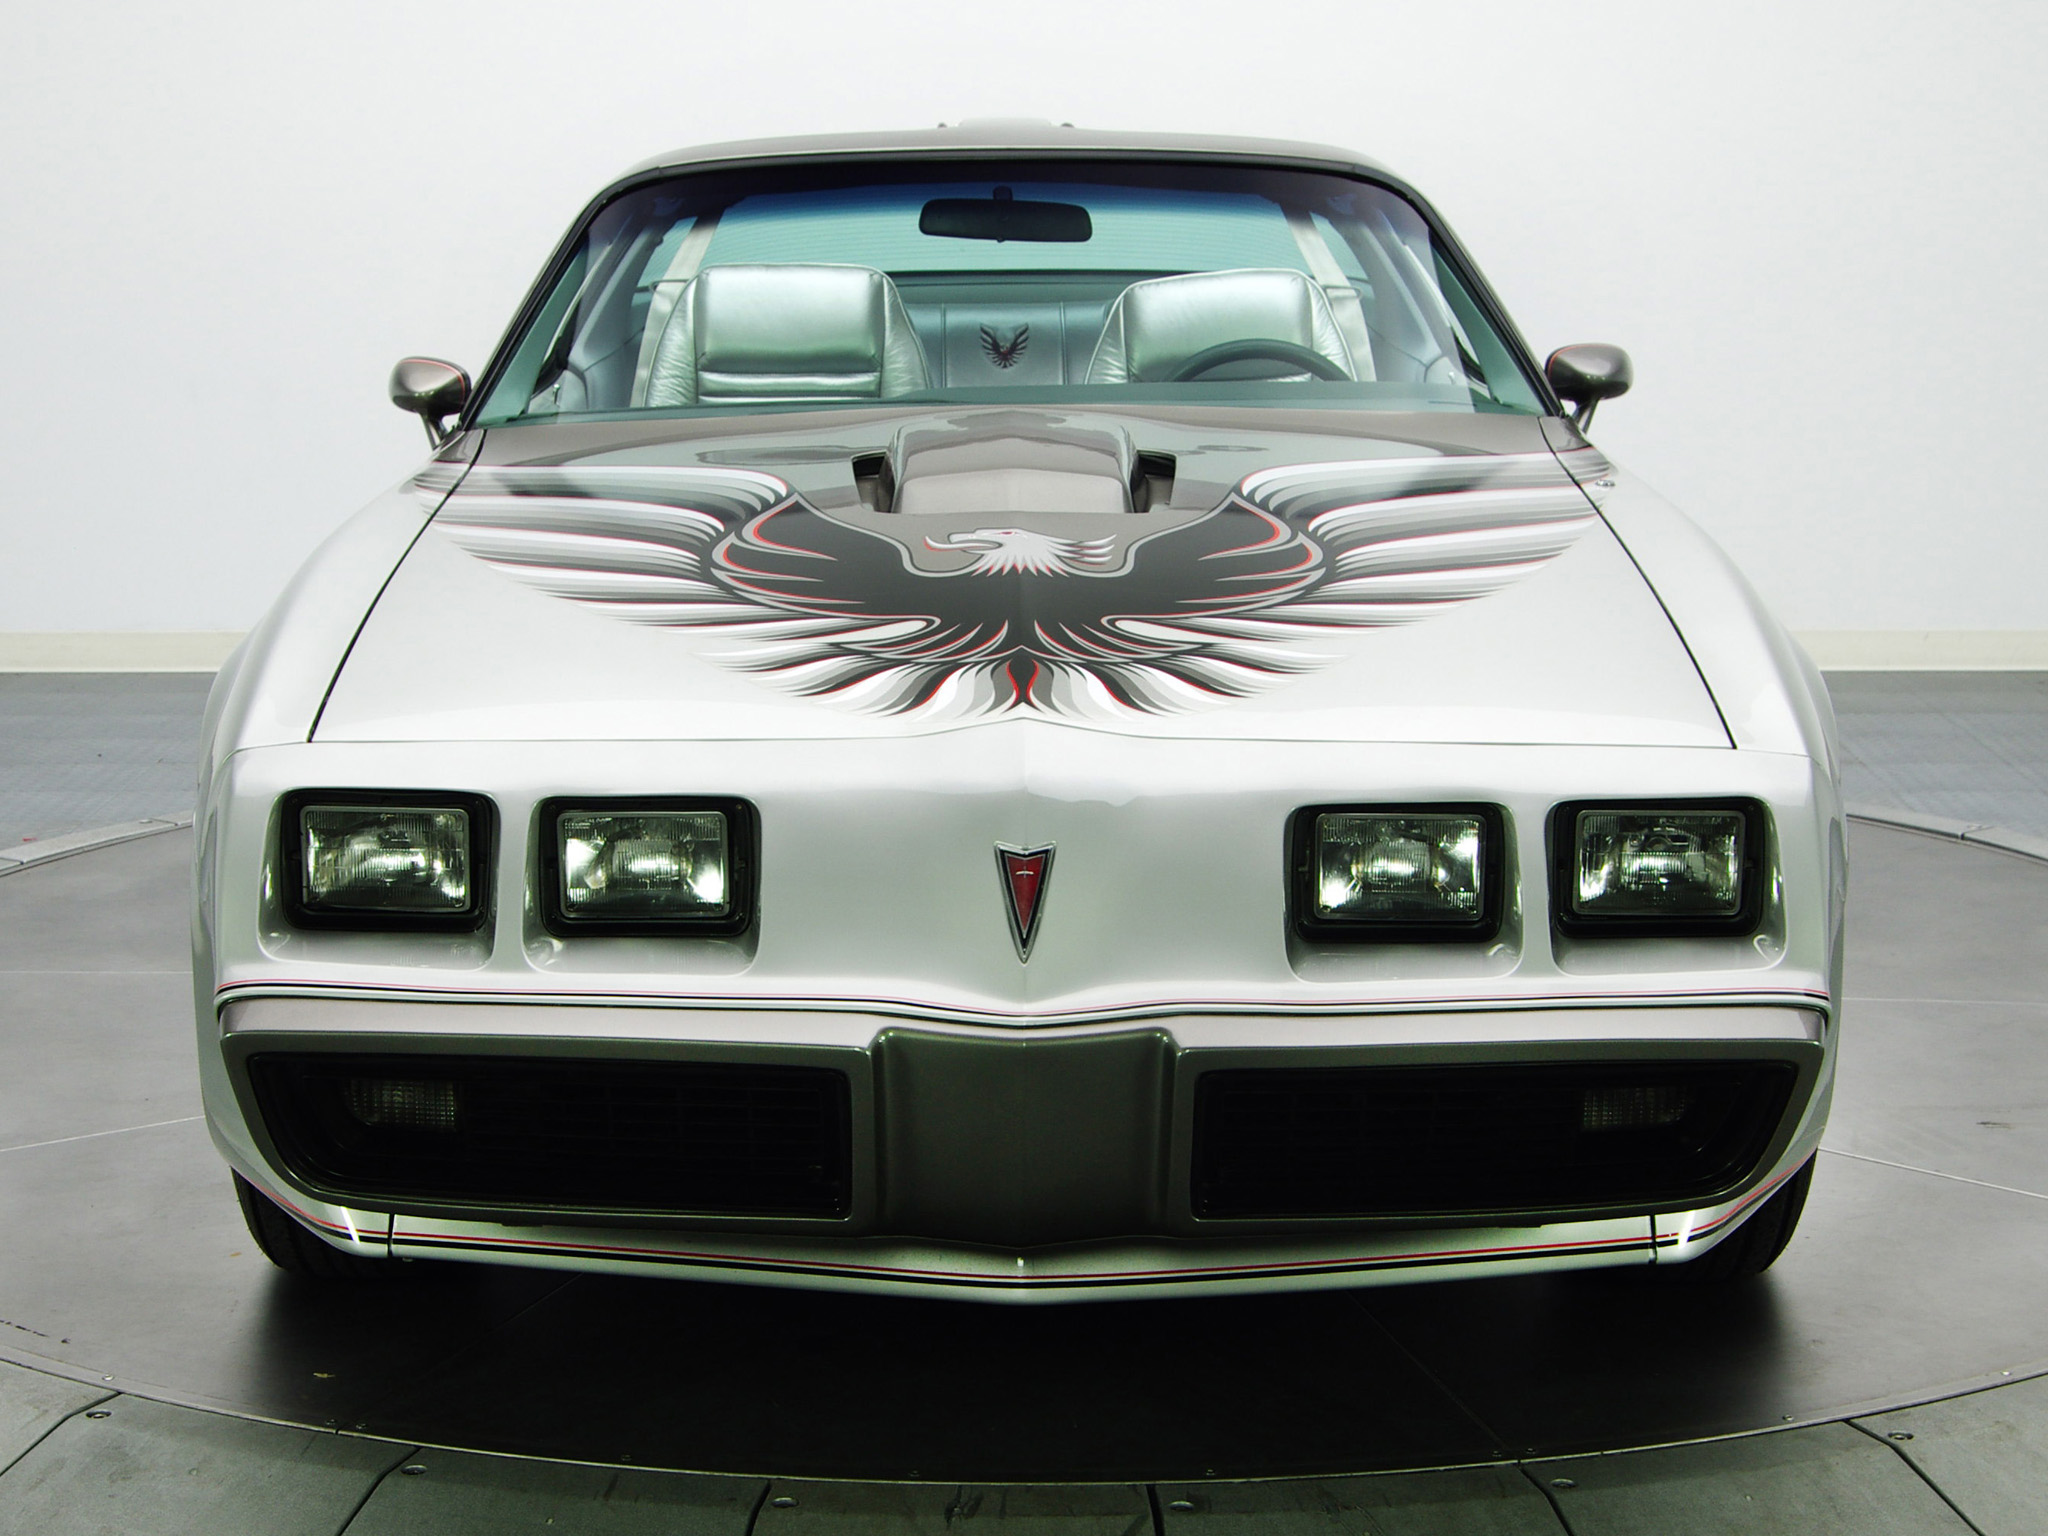 Vehicles Pontiac Firebird Trans Am HD Wallpaper | Background Image